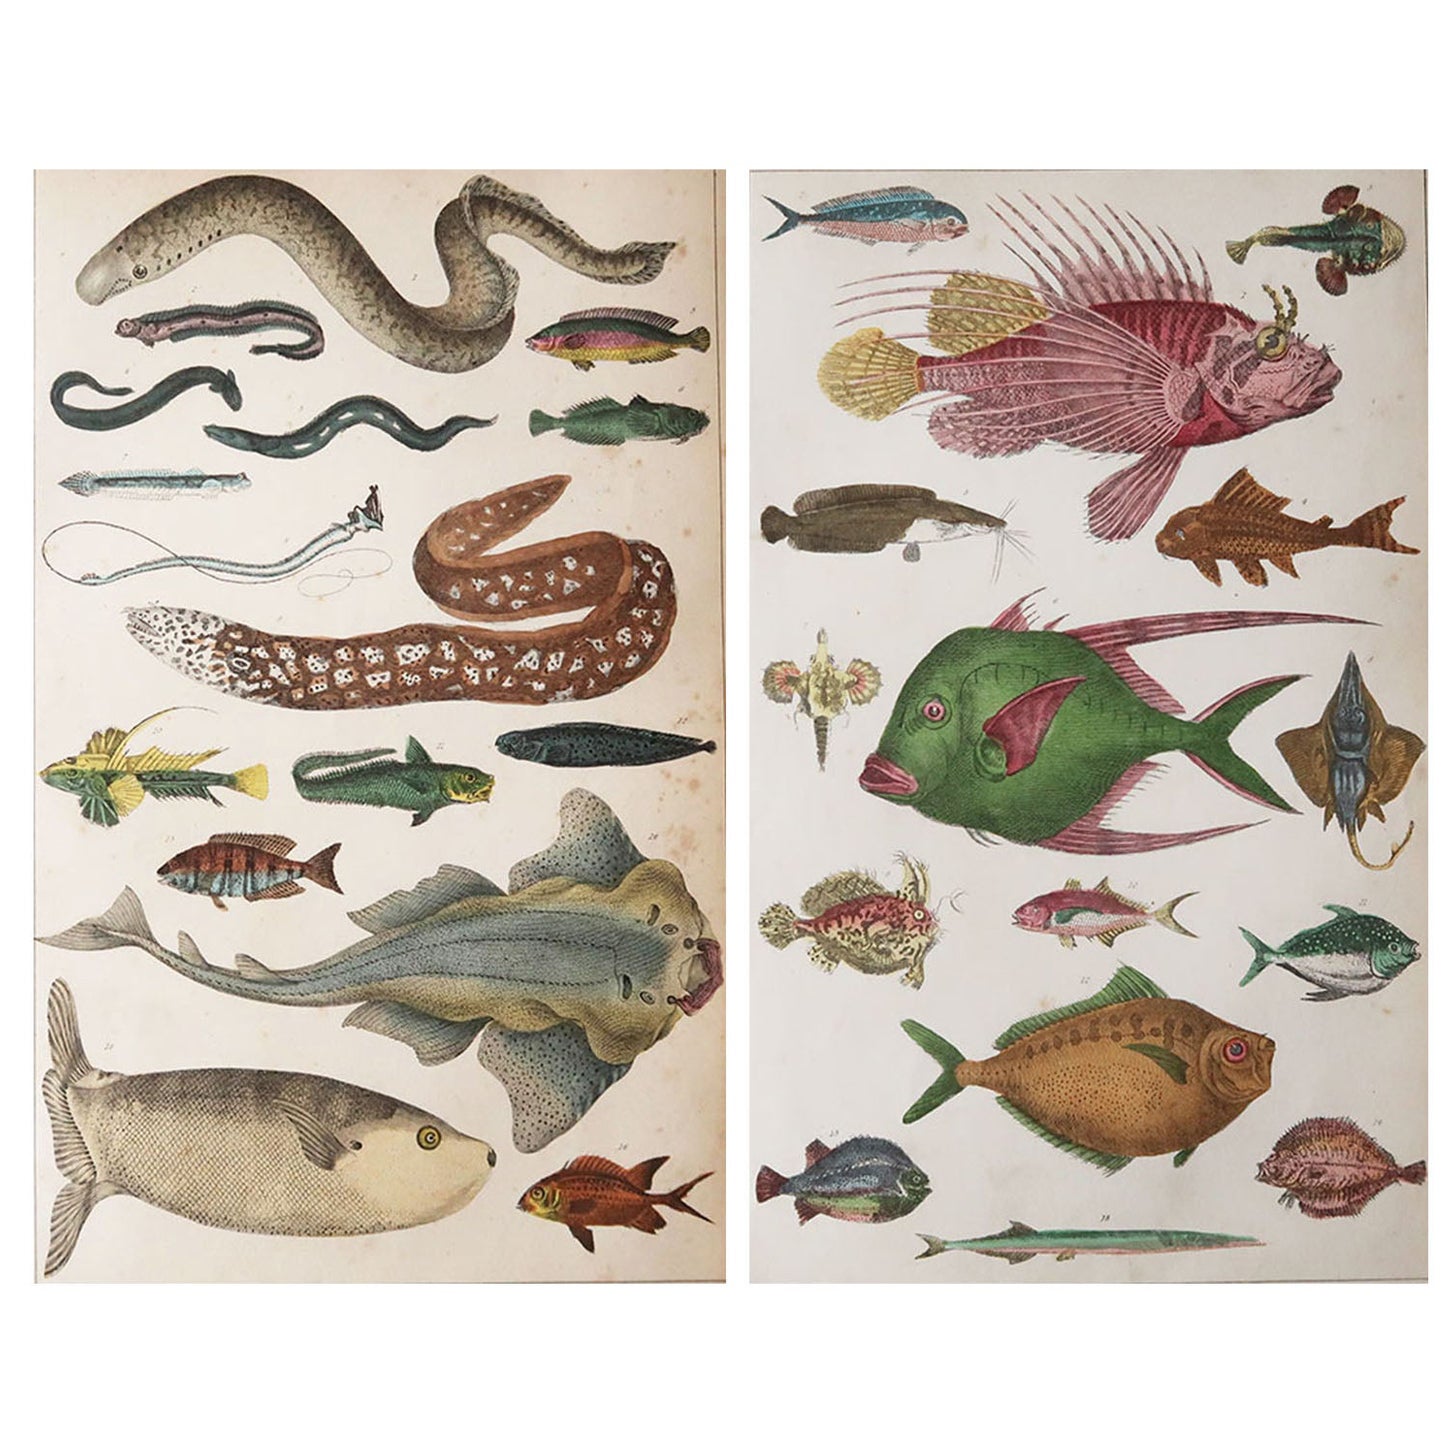 Pair of Original Antique Prints of Fish, 1847